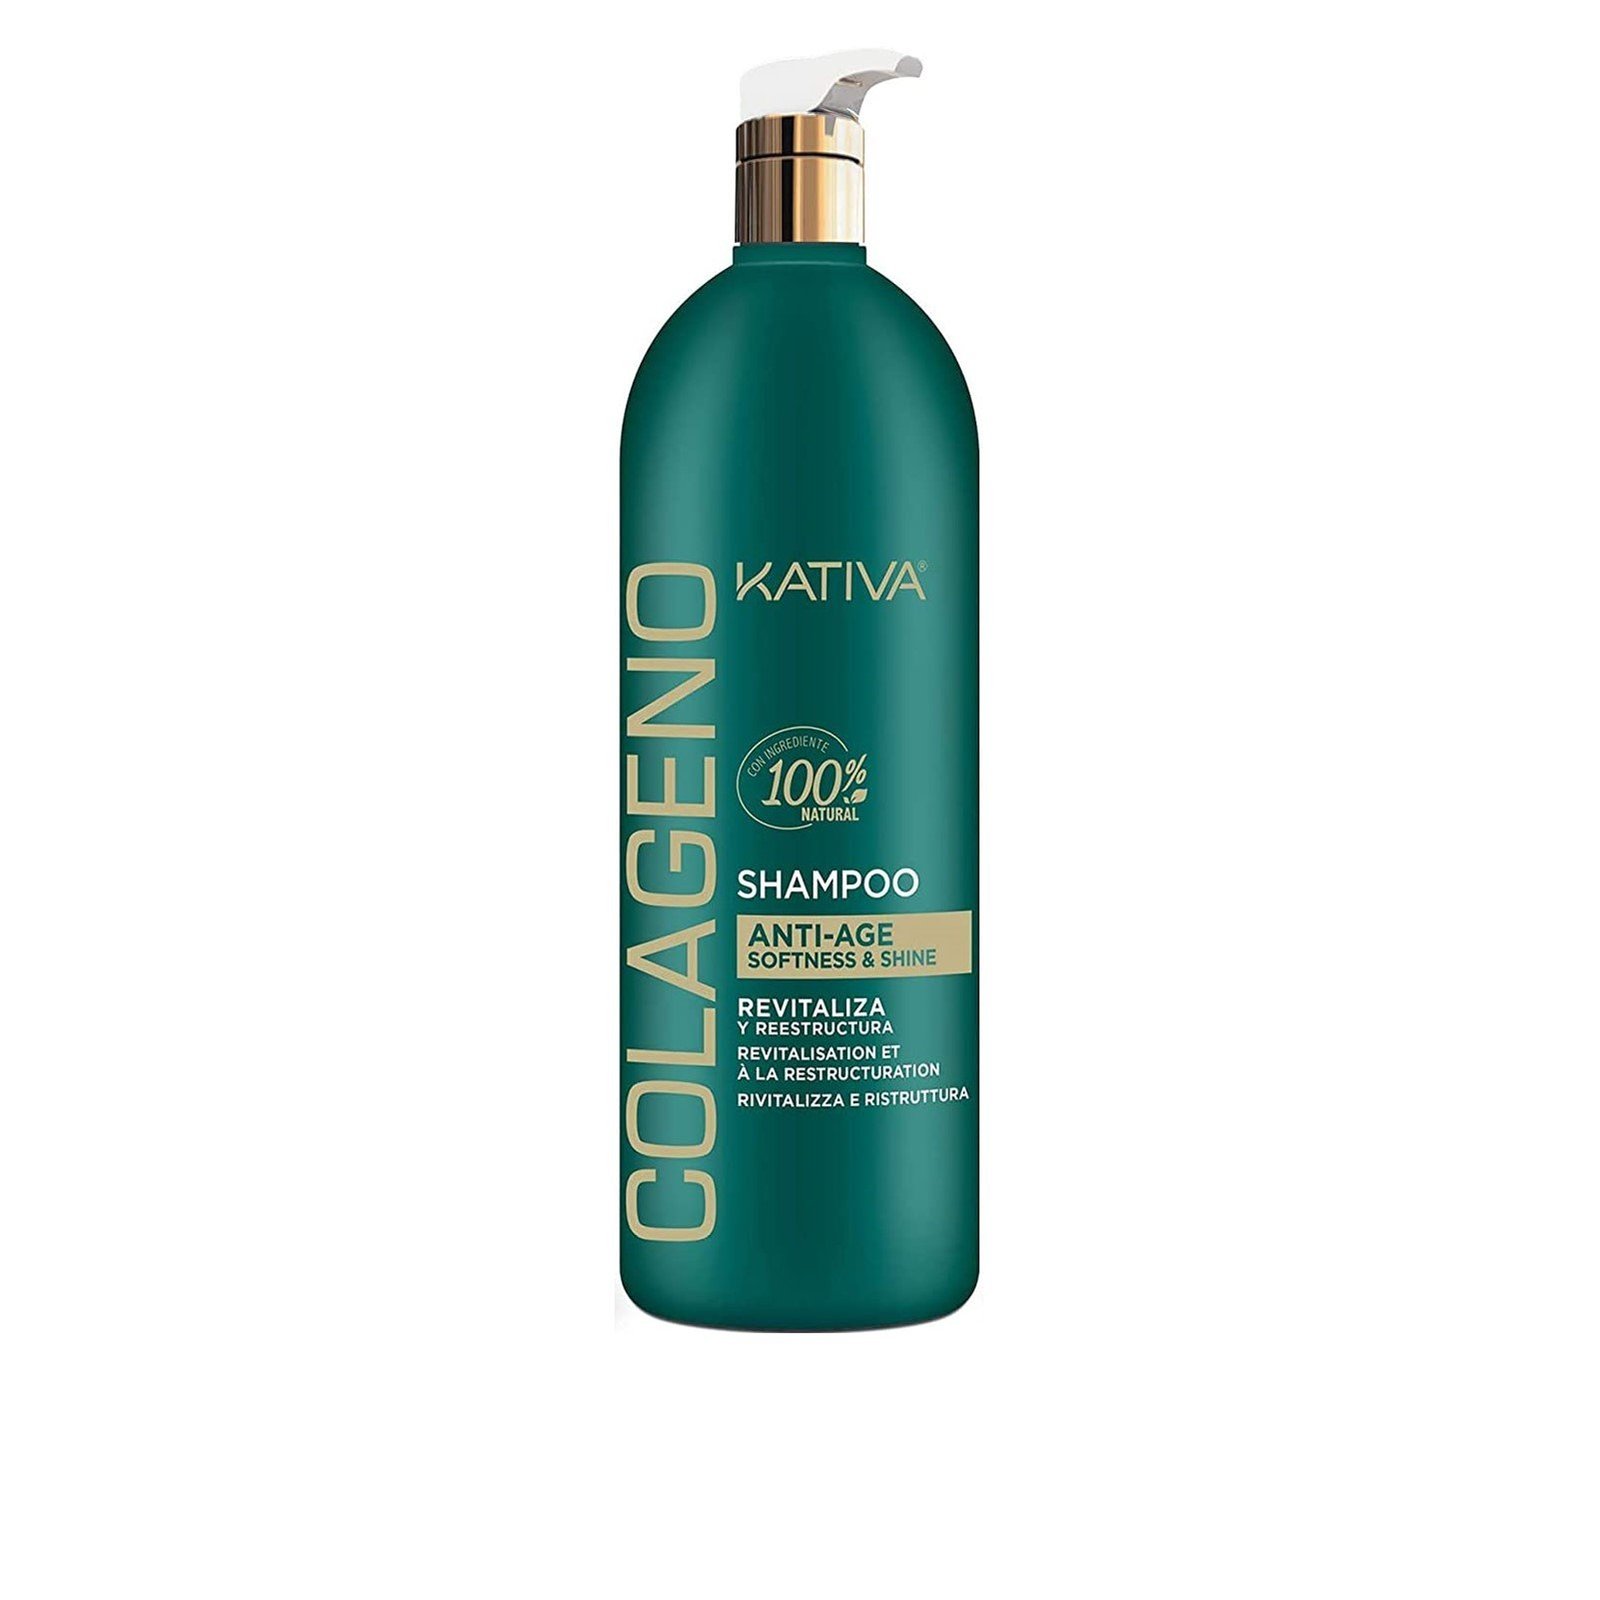 Kativa Collagen Anti-Age Softness & Shine Shampoo 1L (33.8 fl oz)